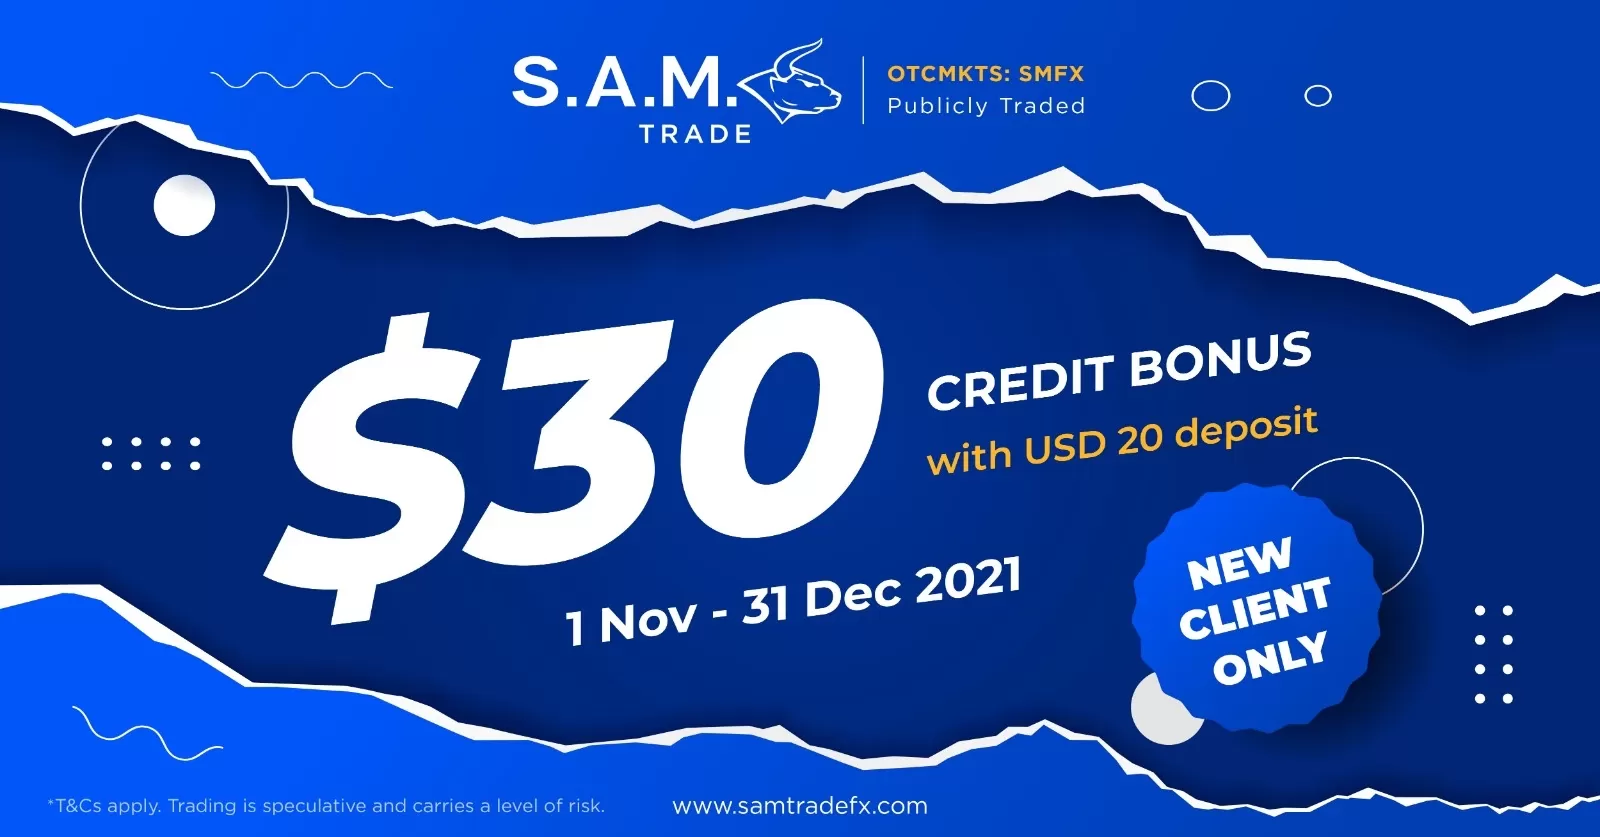 Samtrade FX $30 credit bonus for $20 deposit